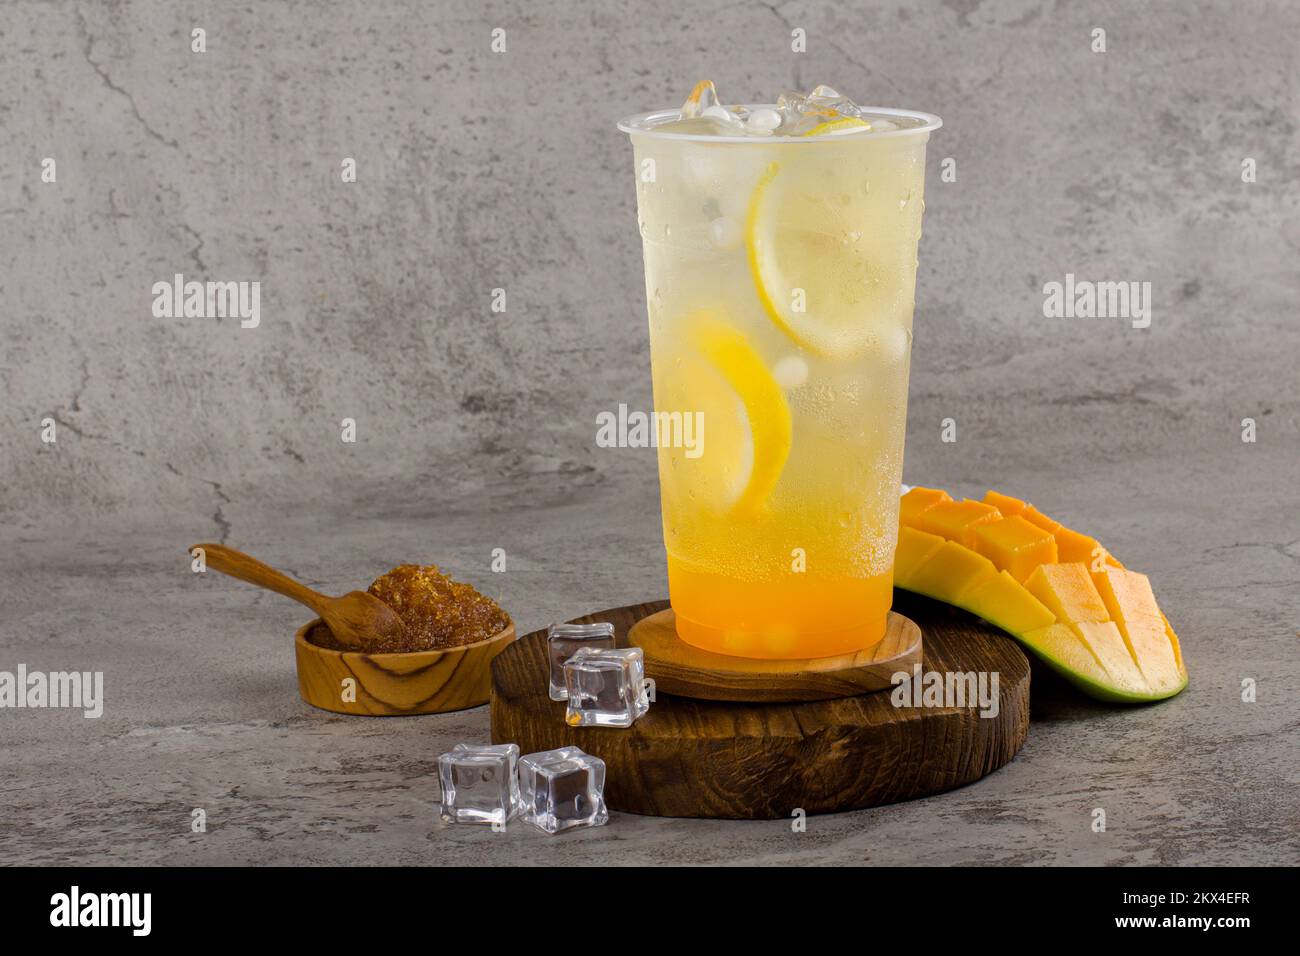 Boba- oder Tapiokapperlen ist taiwan Seifenmilchtee in Plastikbecher mit Mango-Zitronen-Aroma auf texturiertem Hintergrund, Sommererfrischung. Stockfoto